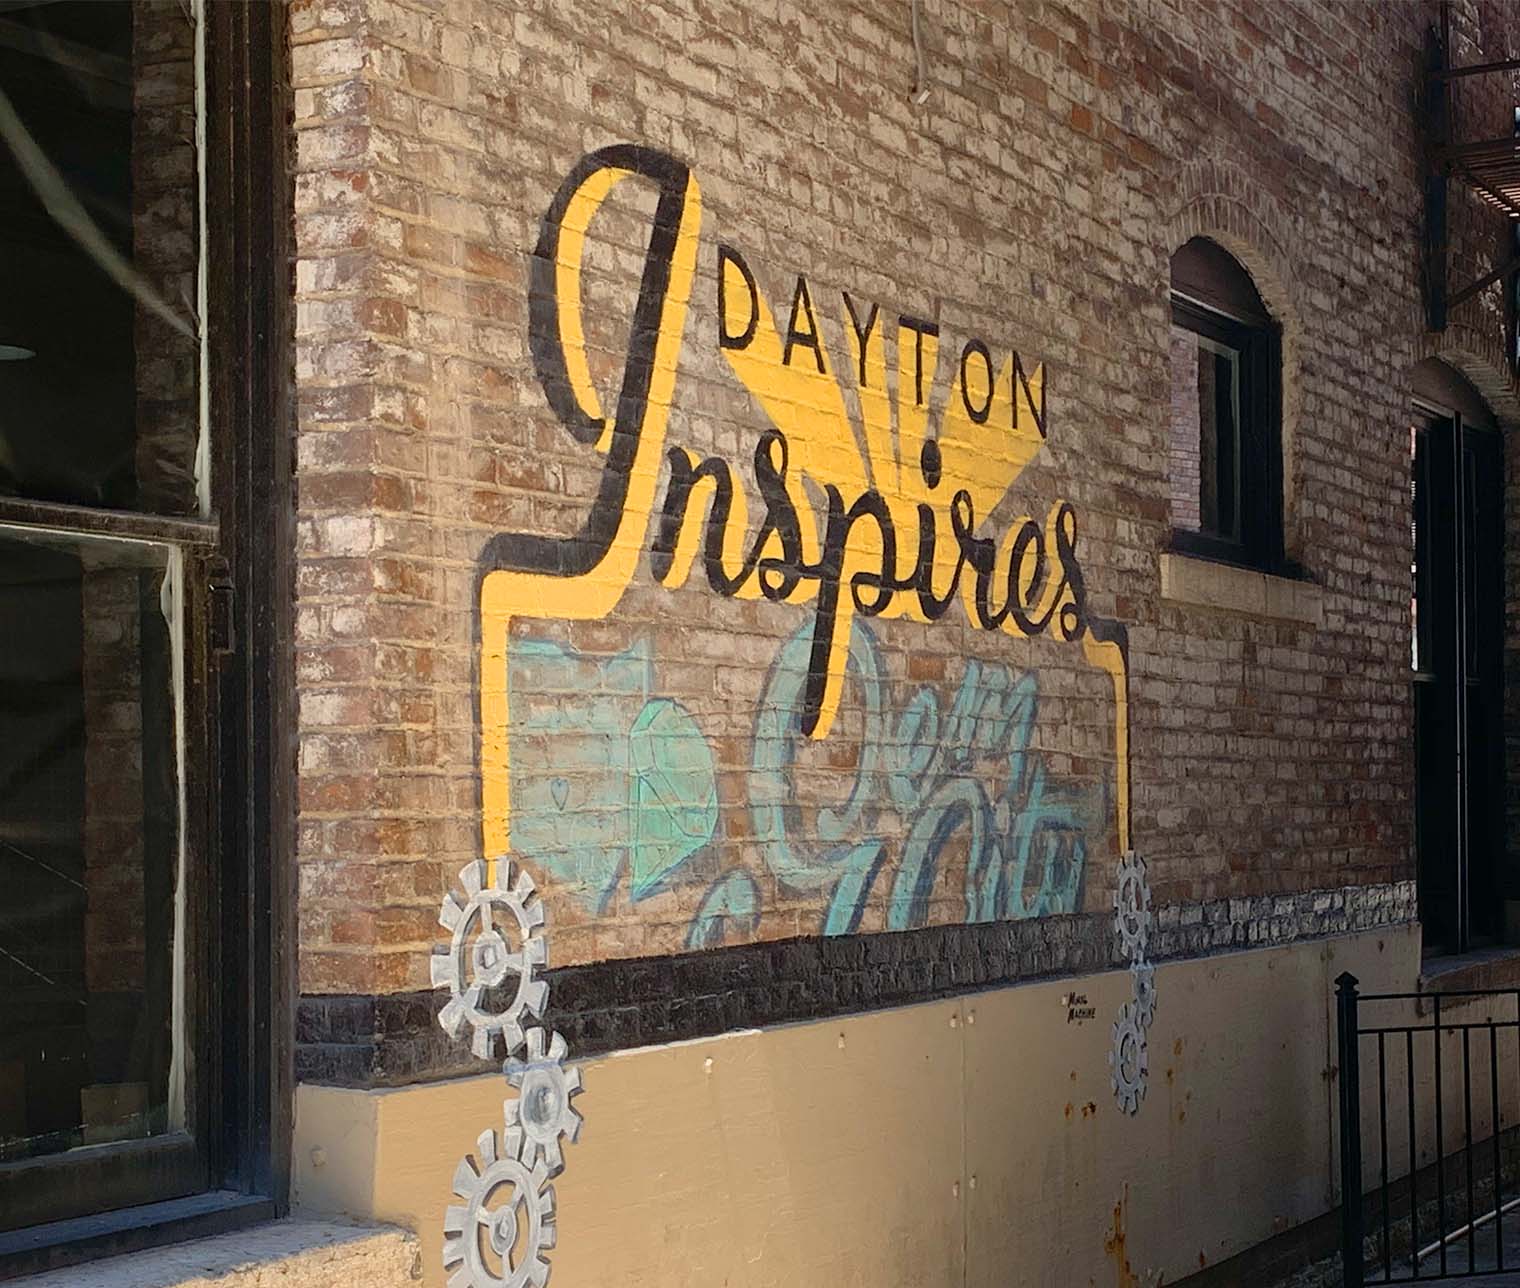 Dayton Inspires mural